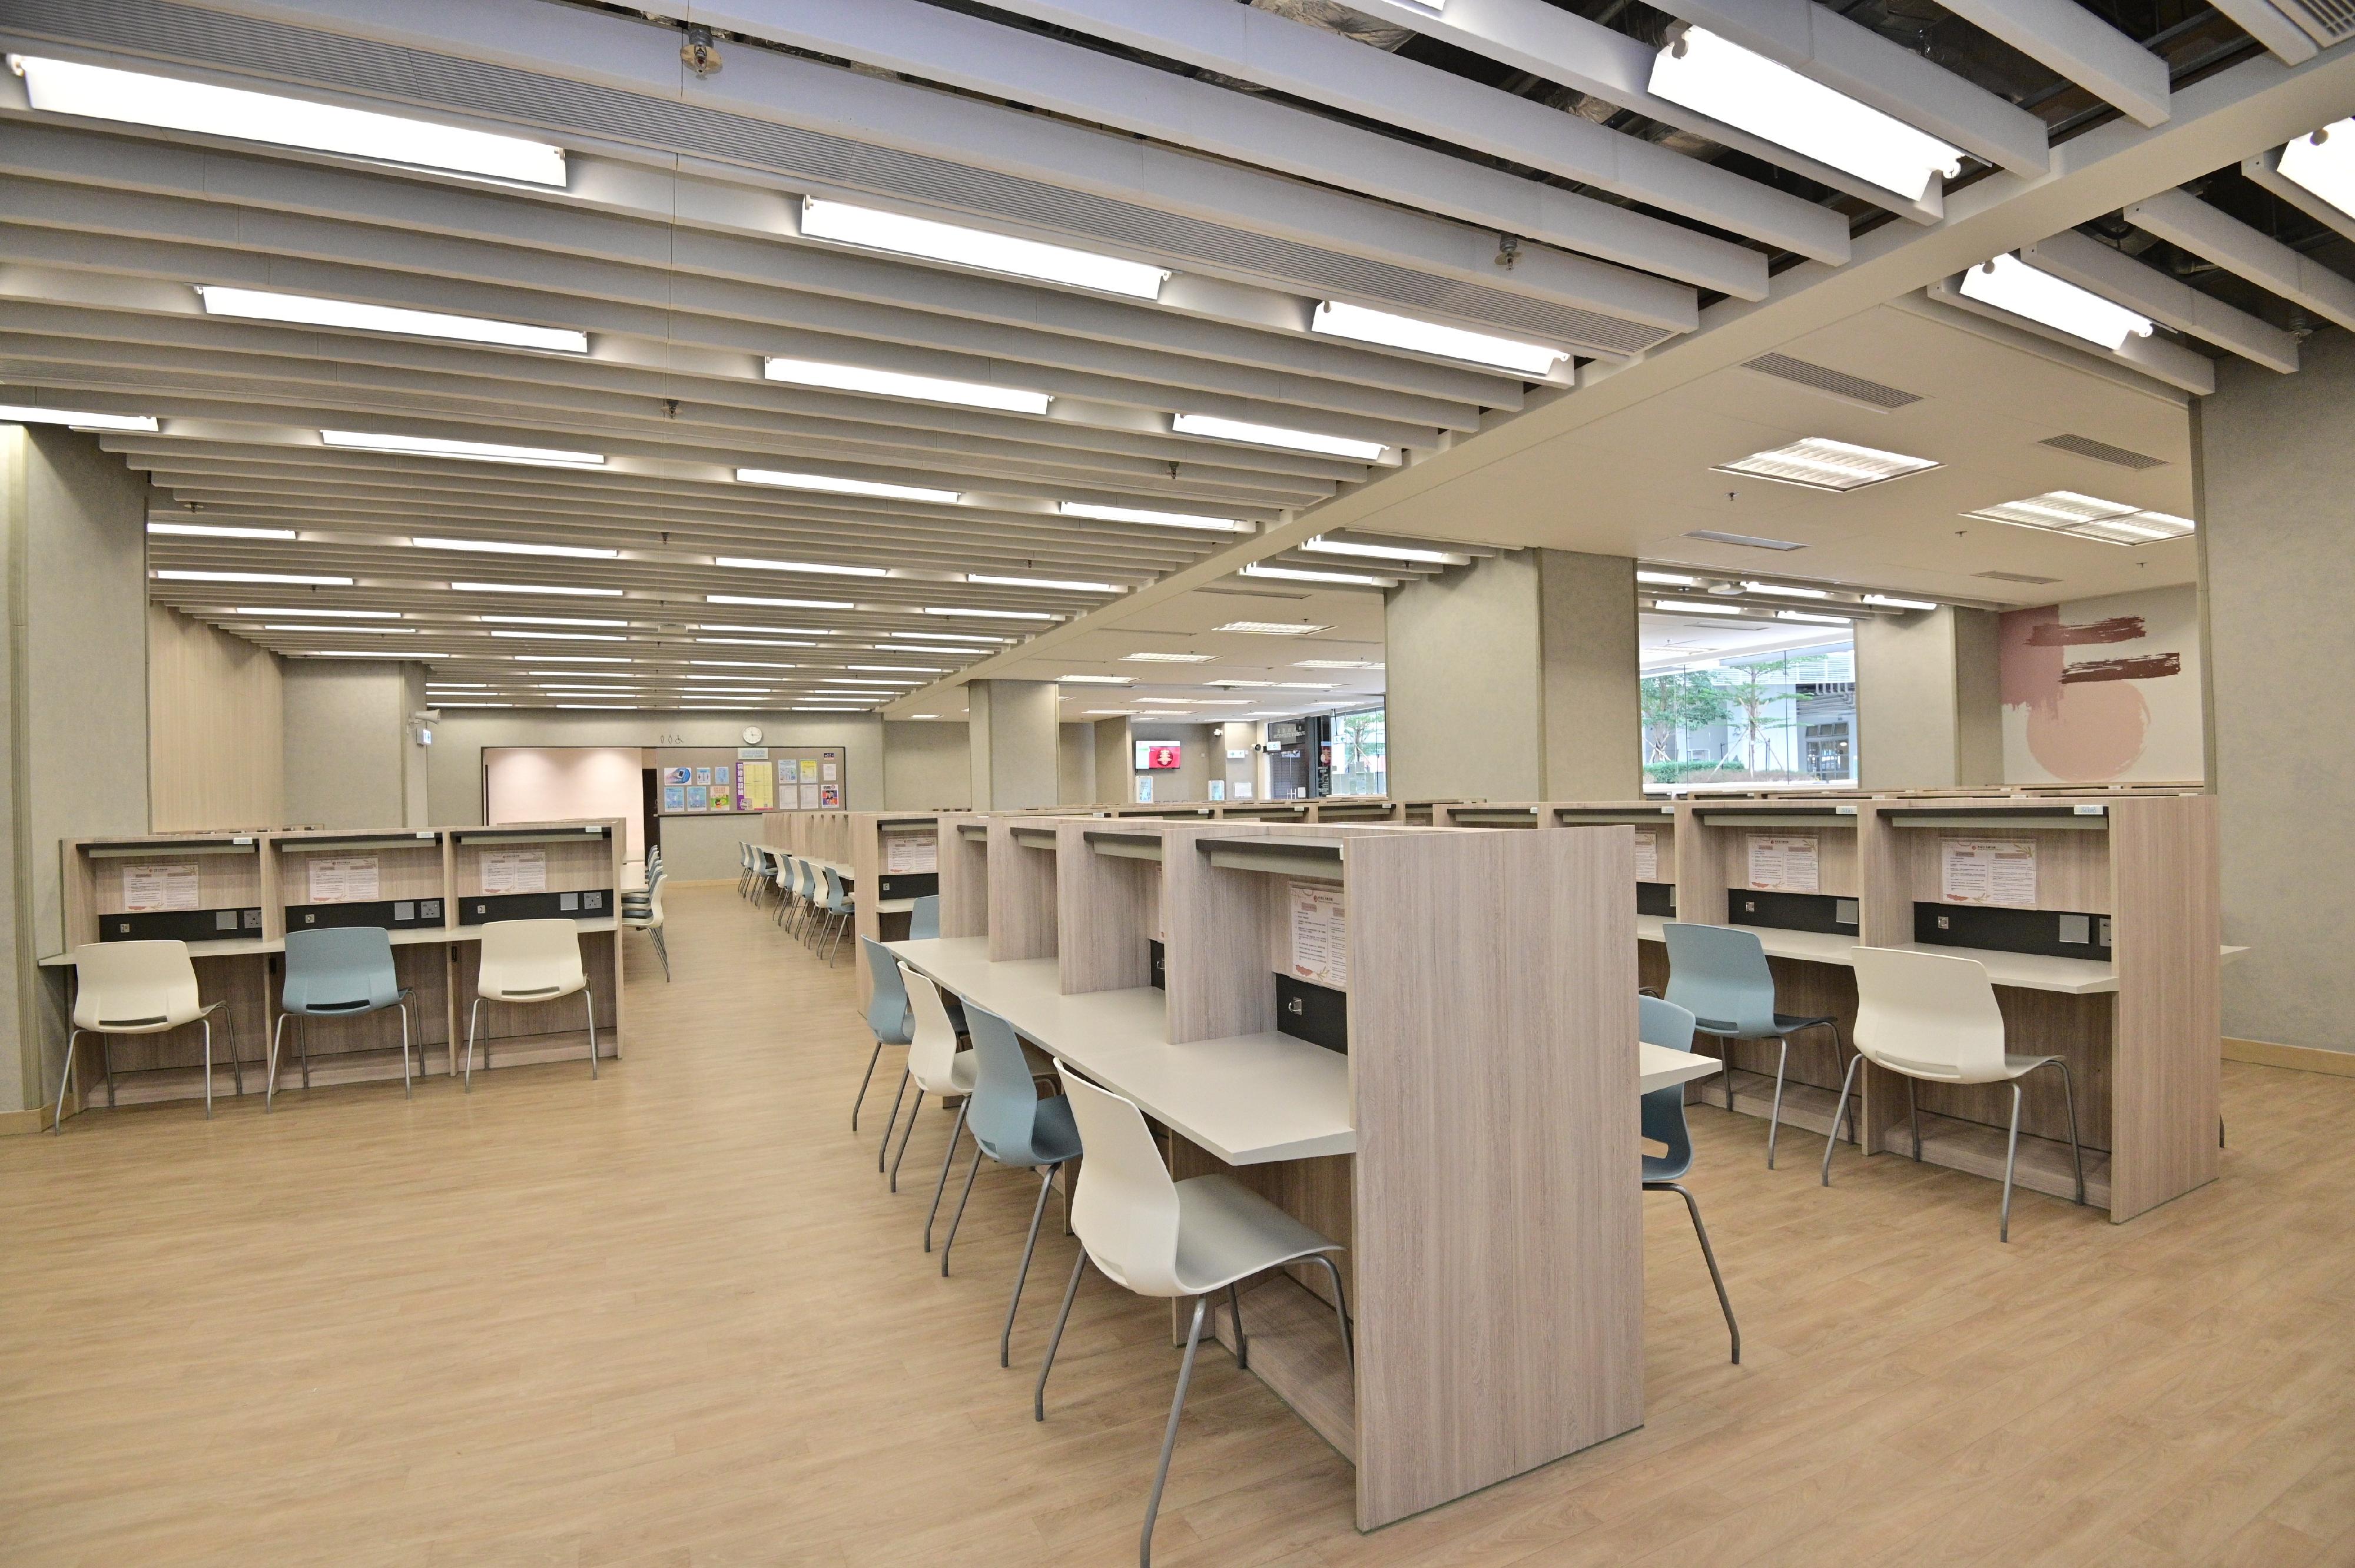 深水埗公共圖書館預計於明年第一季投入服務，是區內的第五間圖書館，其學生自修室十月三十一日（星期一）率先開放，為區內學生及市民提供舒適及寧靜的環境自學進修。學生自修室面積約340平方米，提供220個座位。